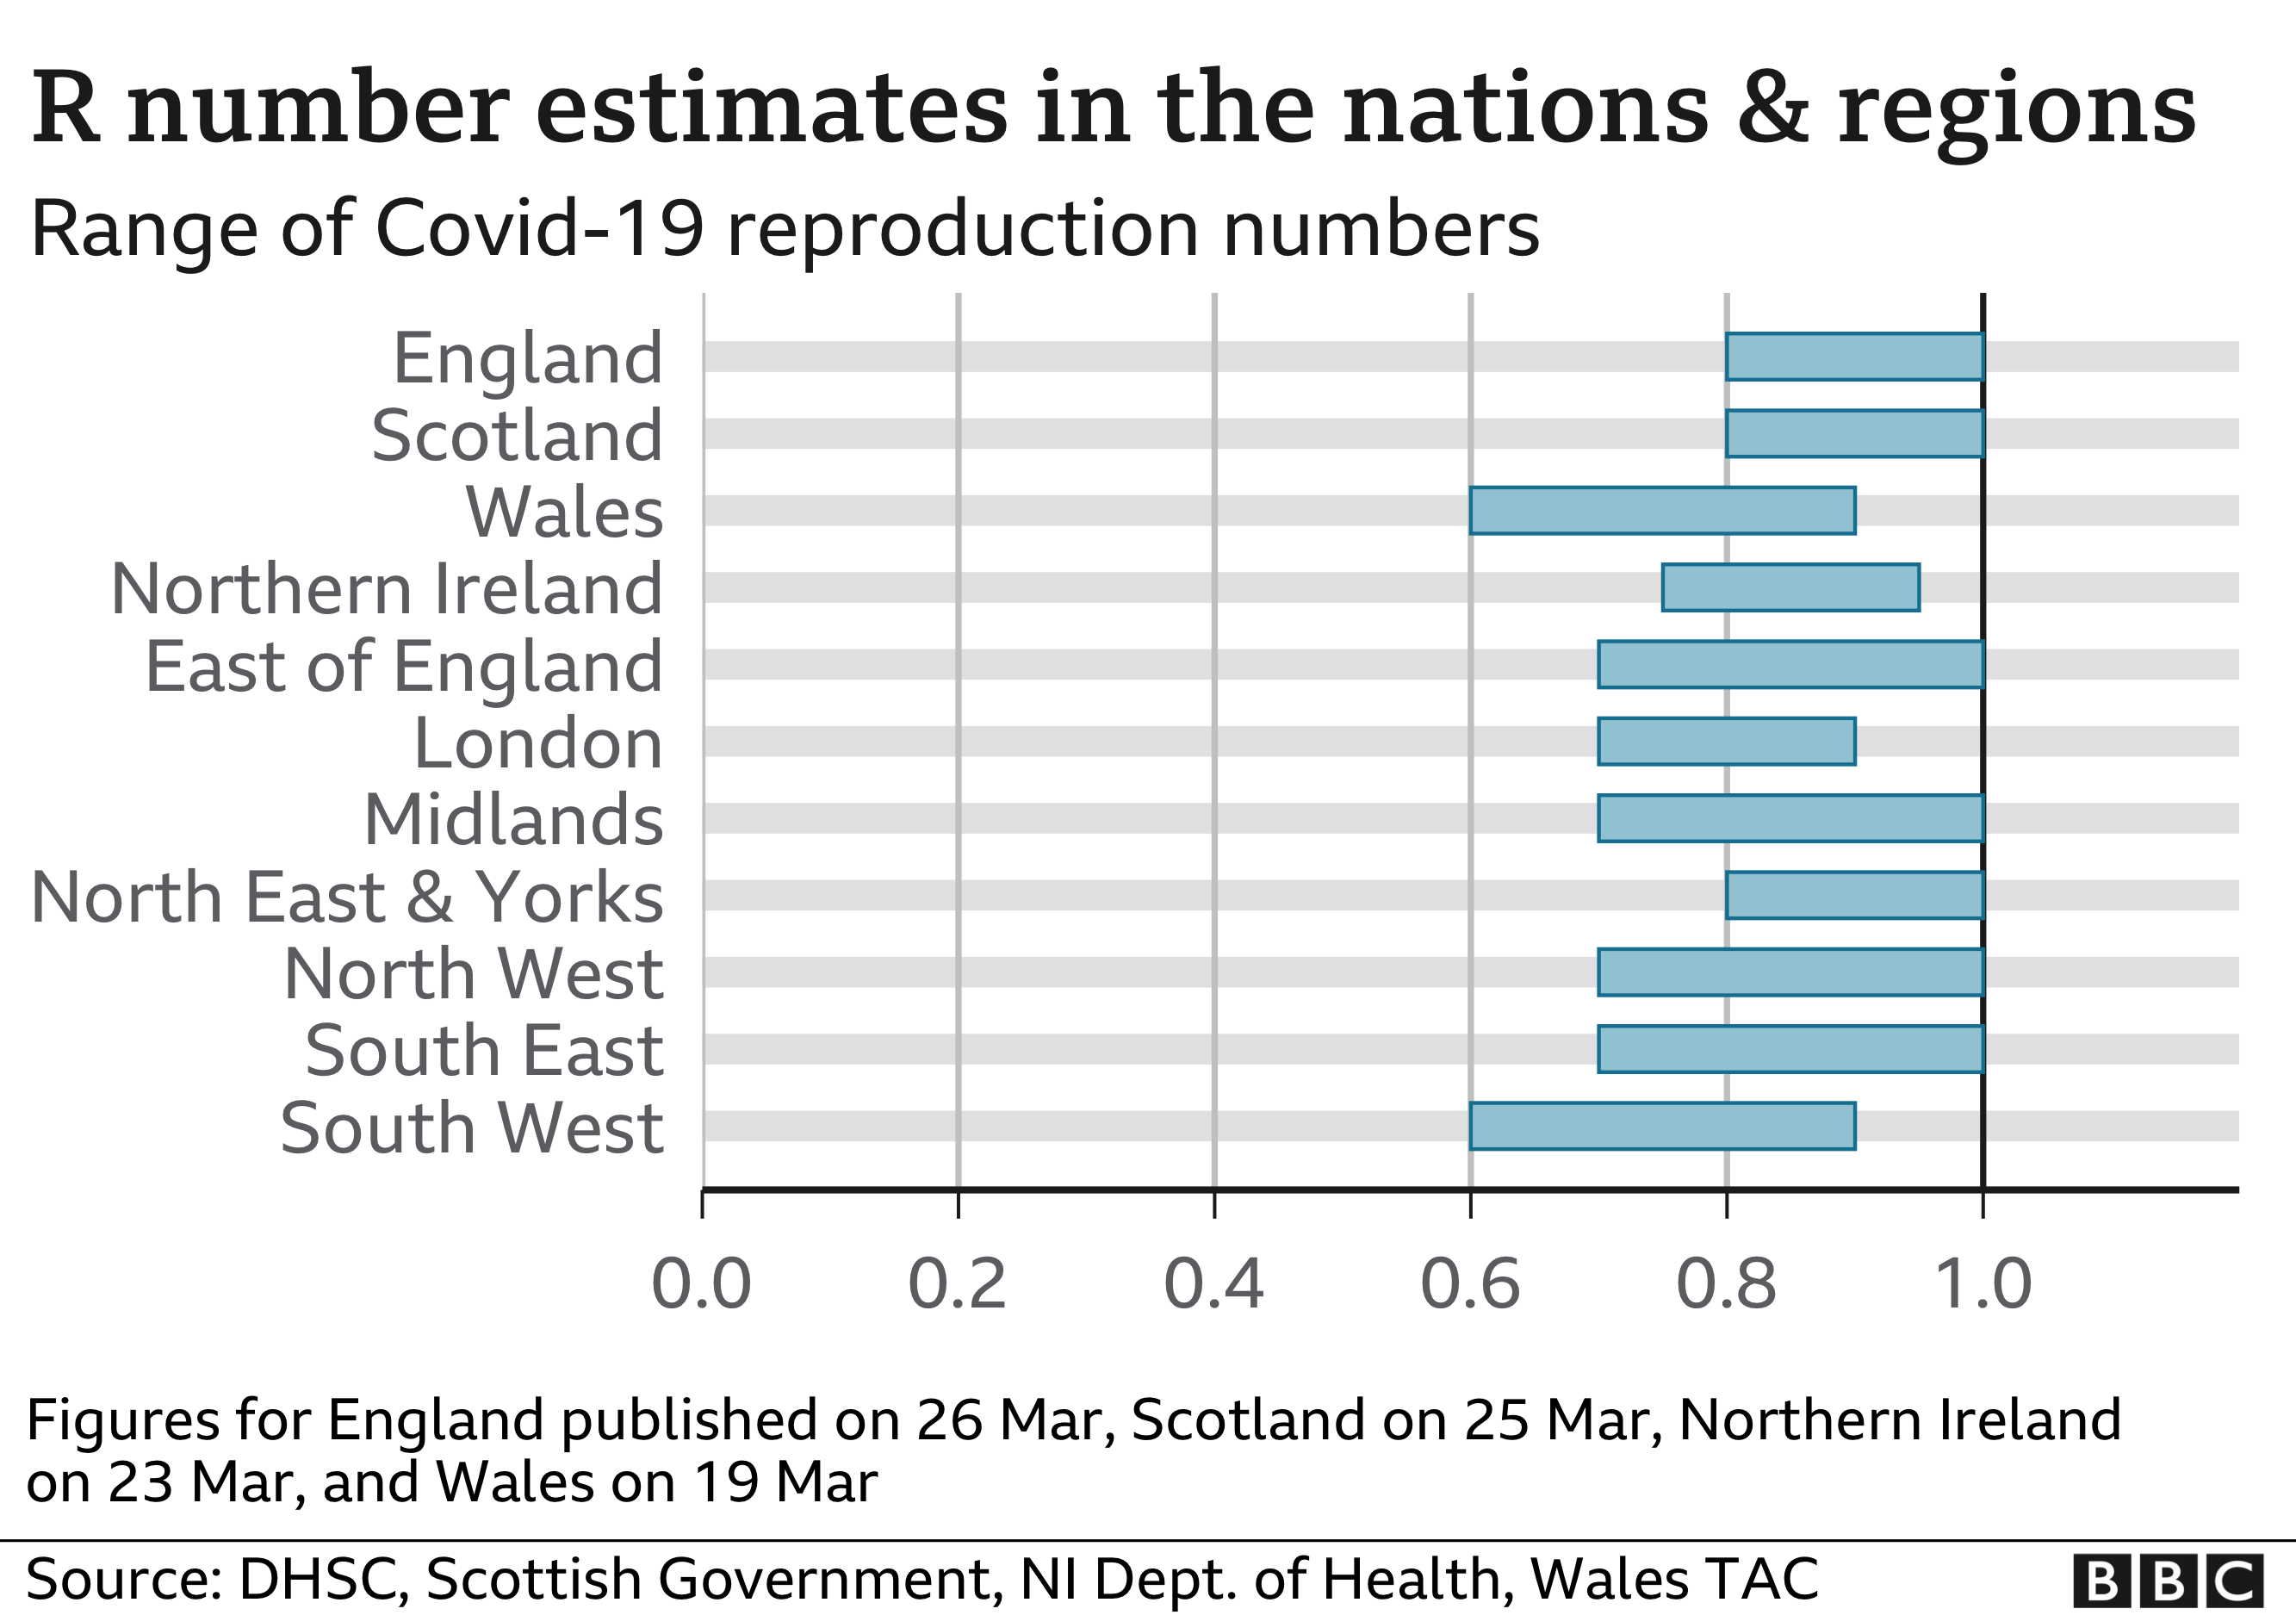 R-antalsuppskattningar i nationer och regioner 26 mars